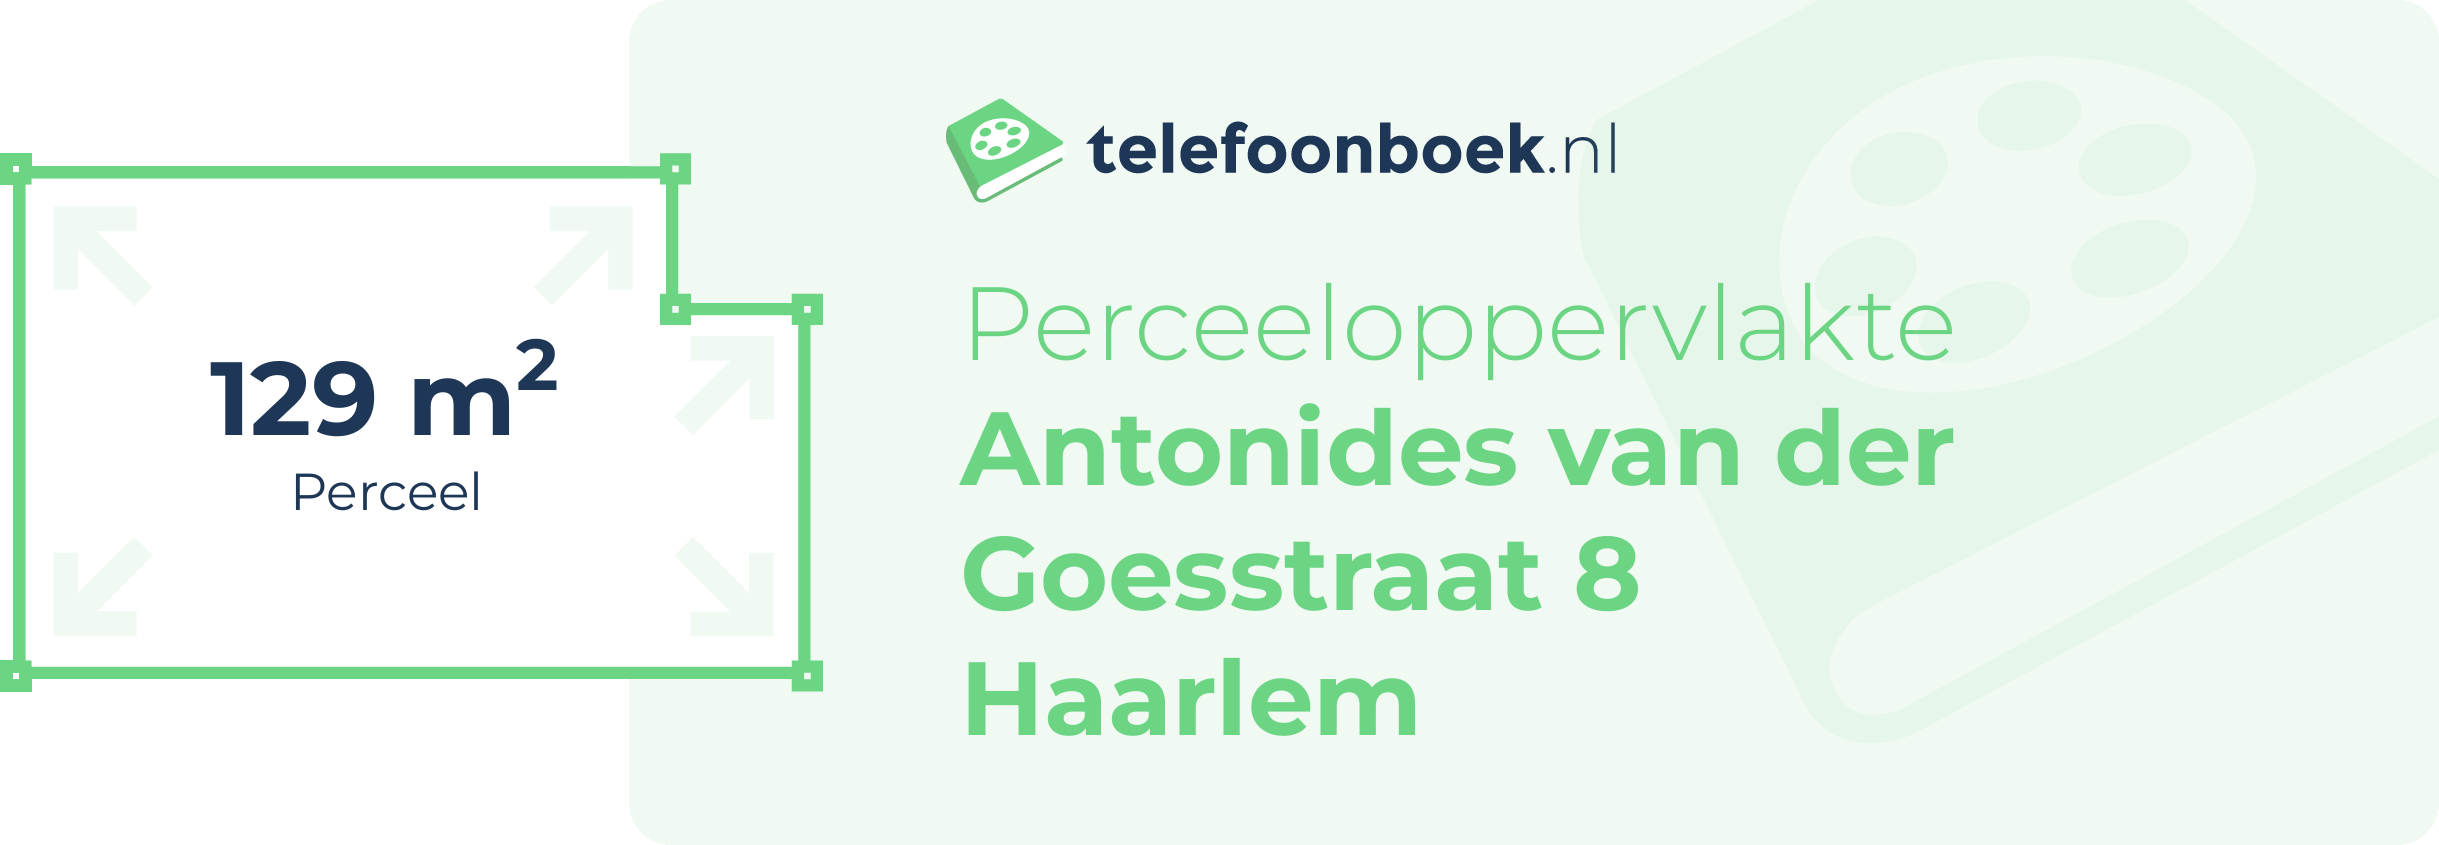 Perceeloppervlakte Antonides Van Der Goesstraat 8 Haarlem